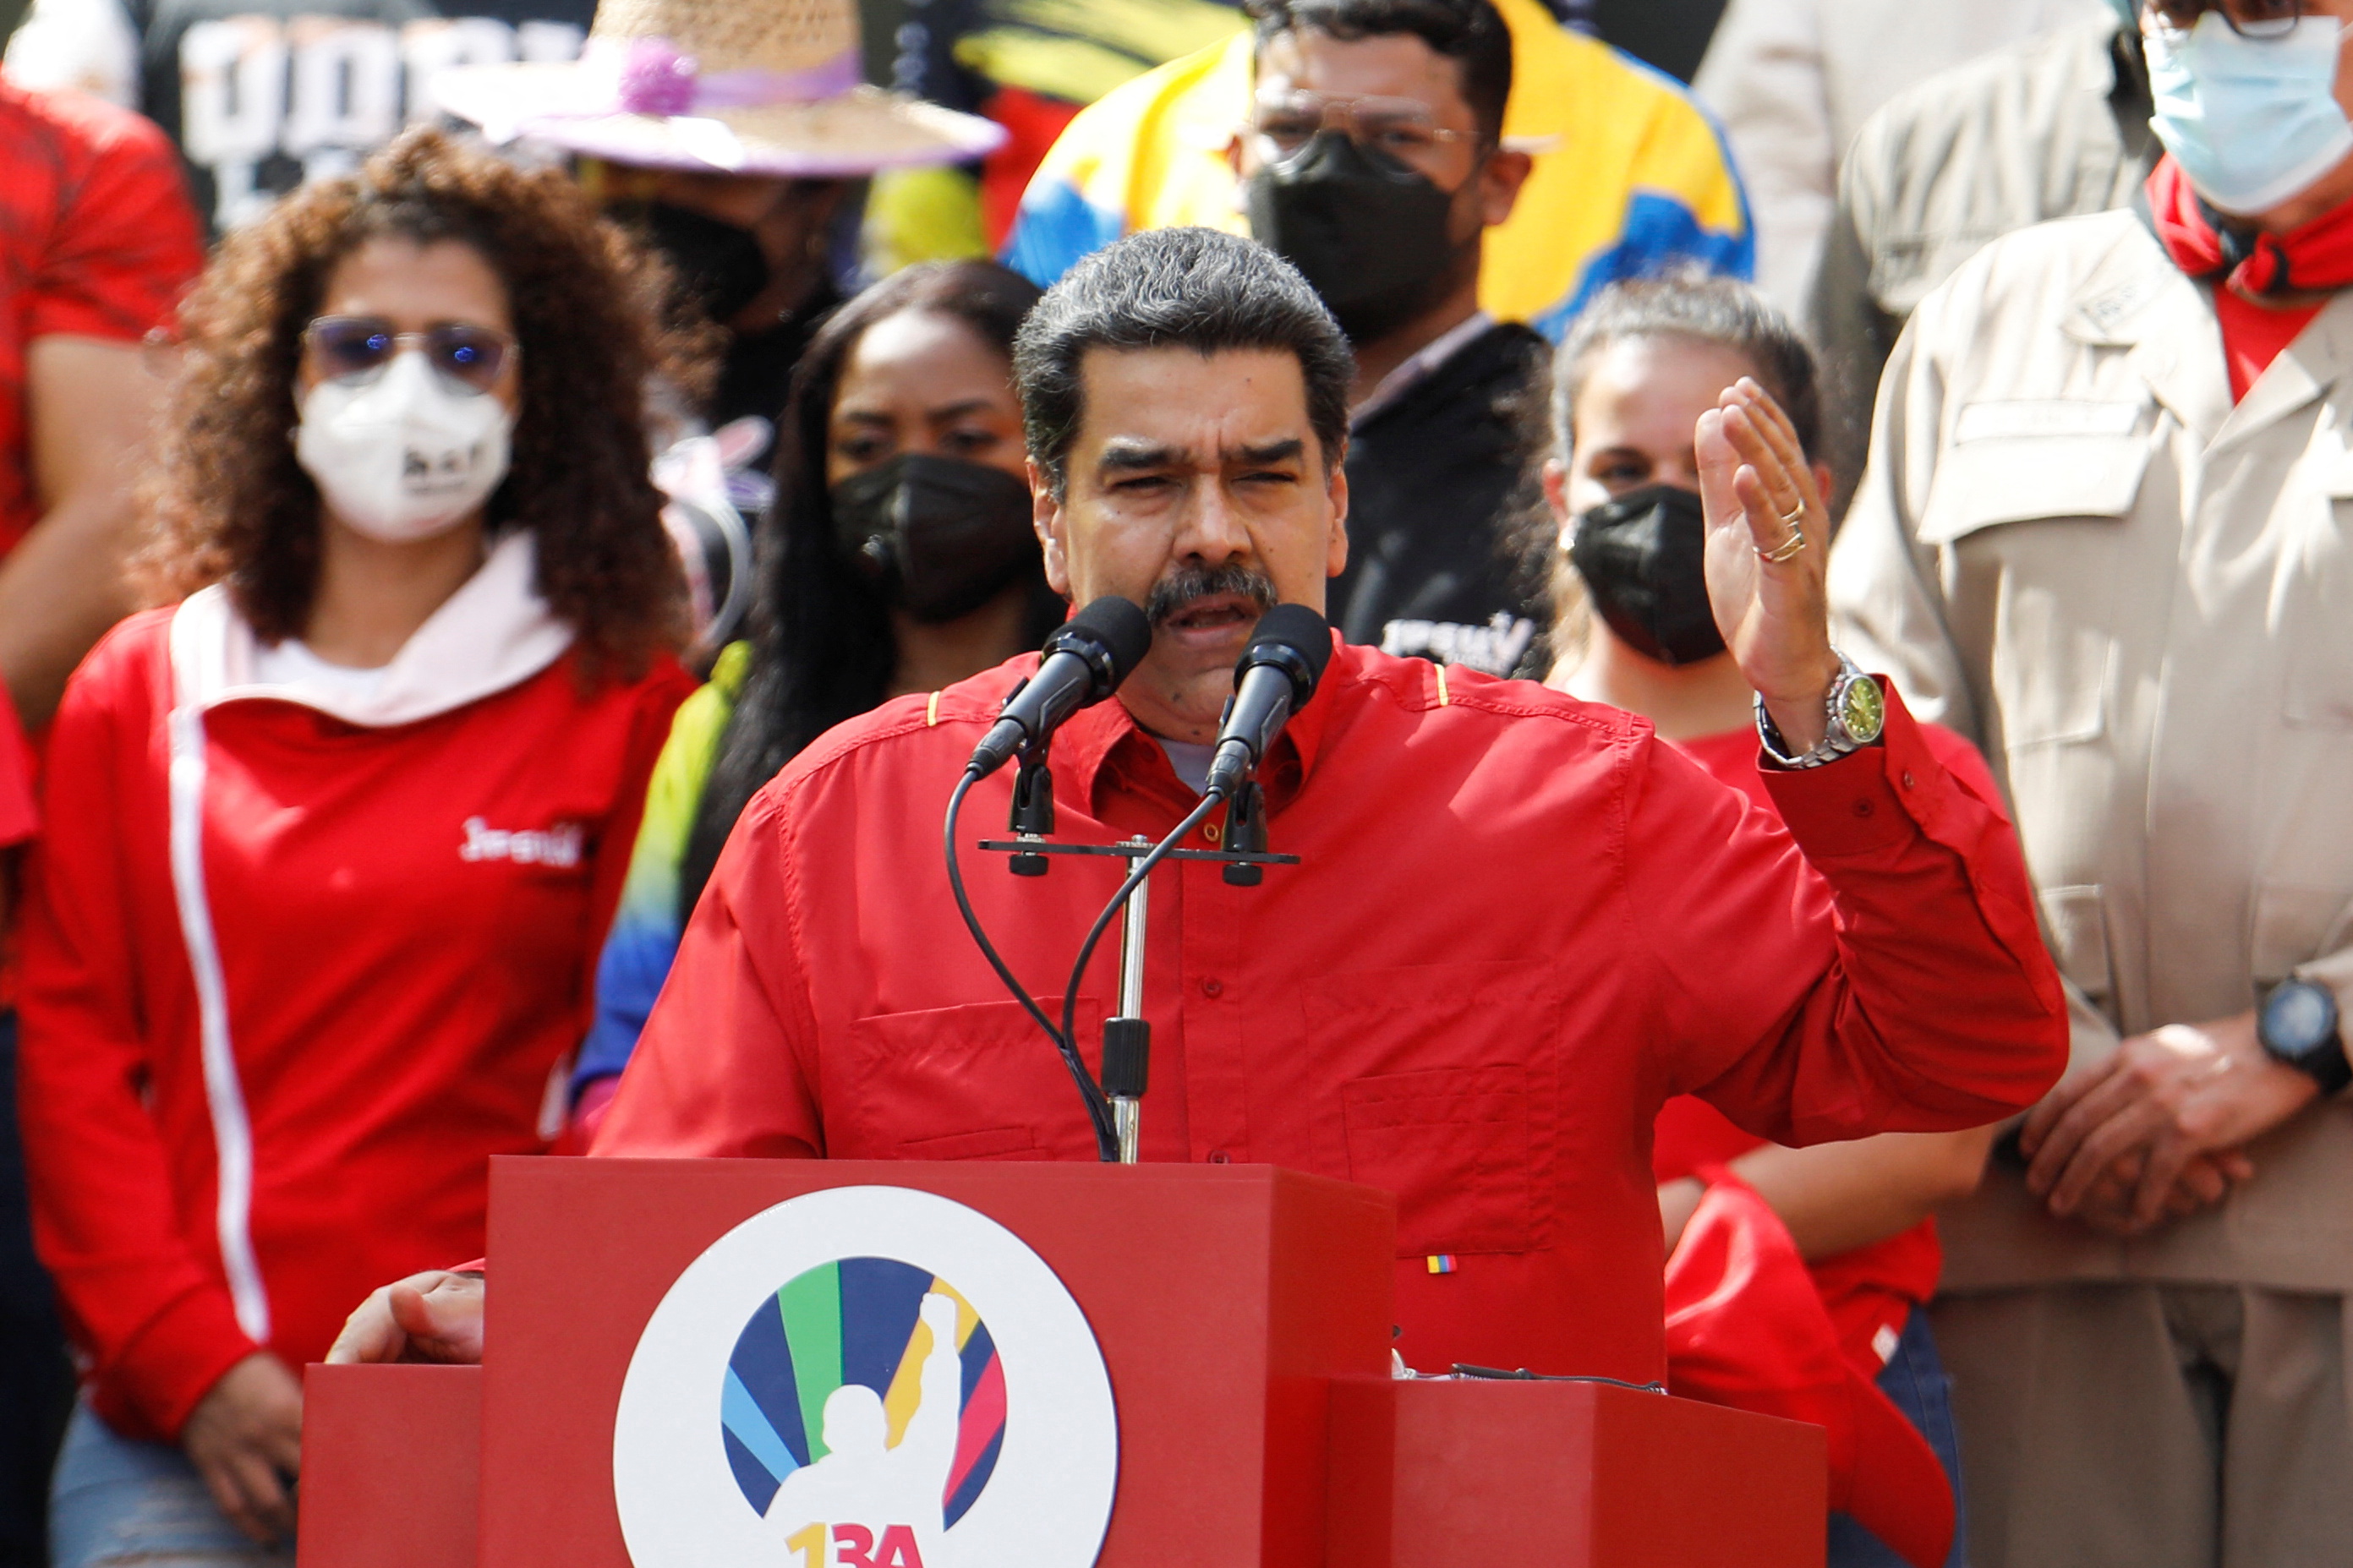 El régimen de Nicolás Maduro ofertará en la bolsa de valores acciones de empresas públicas